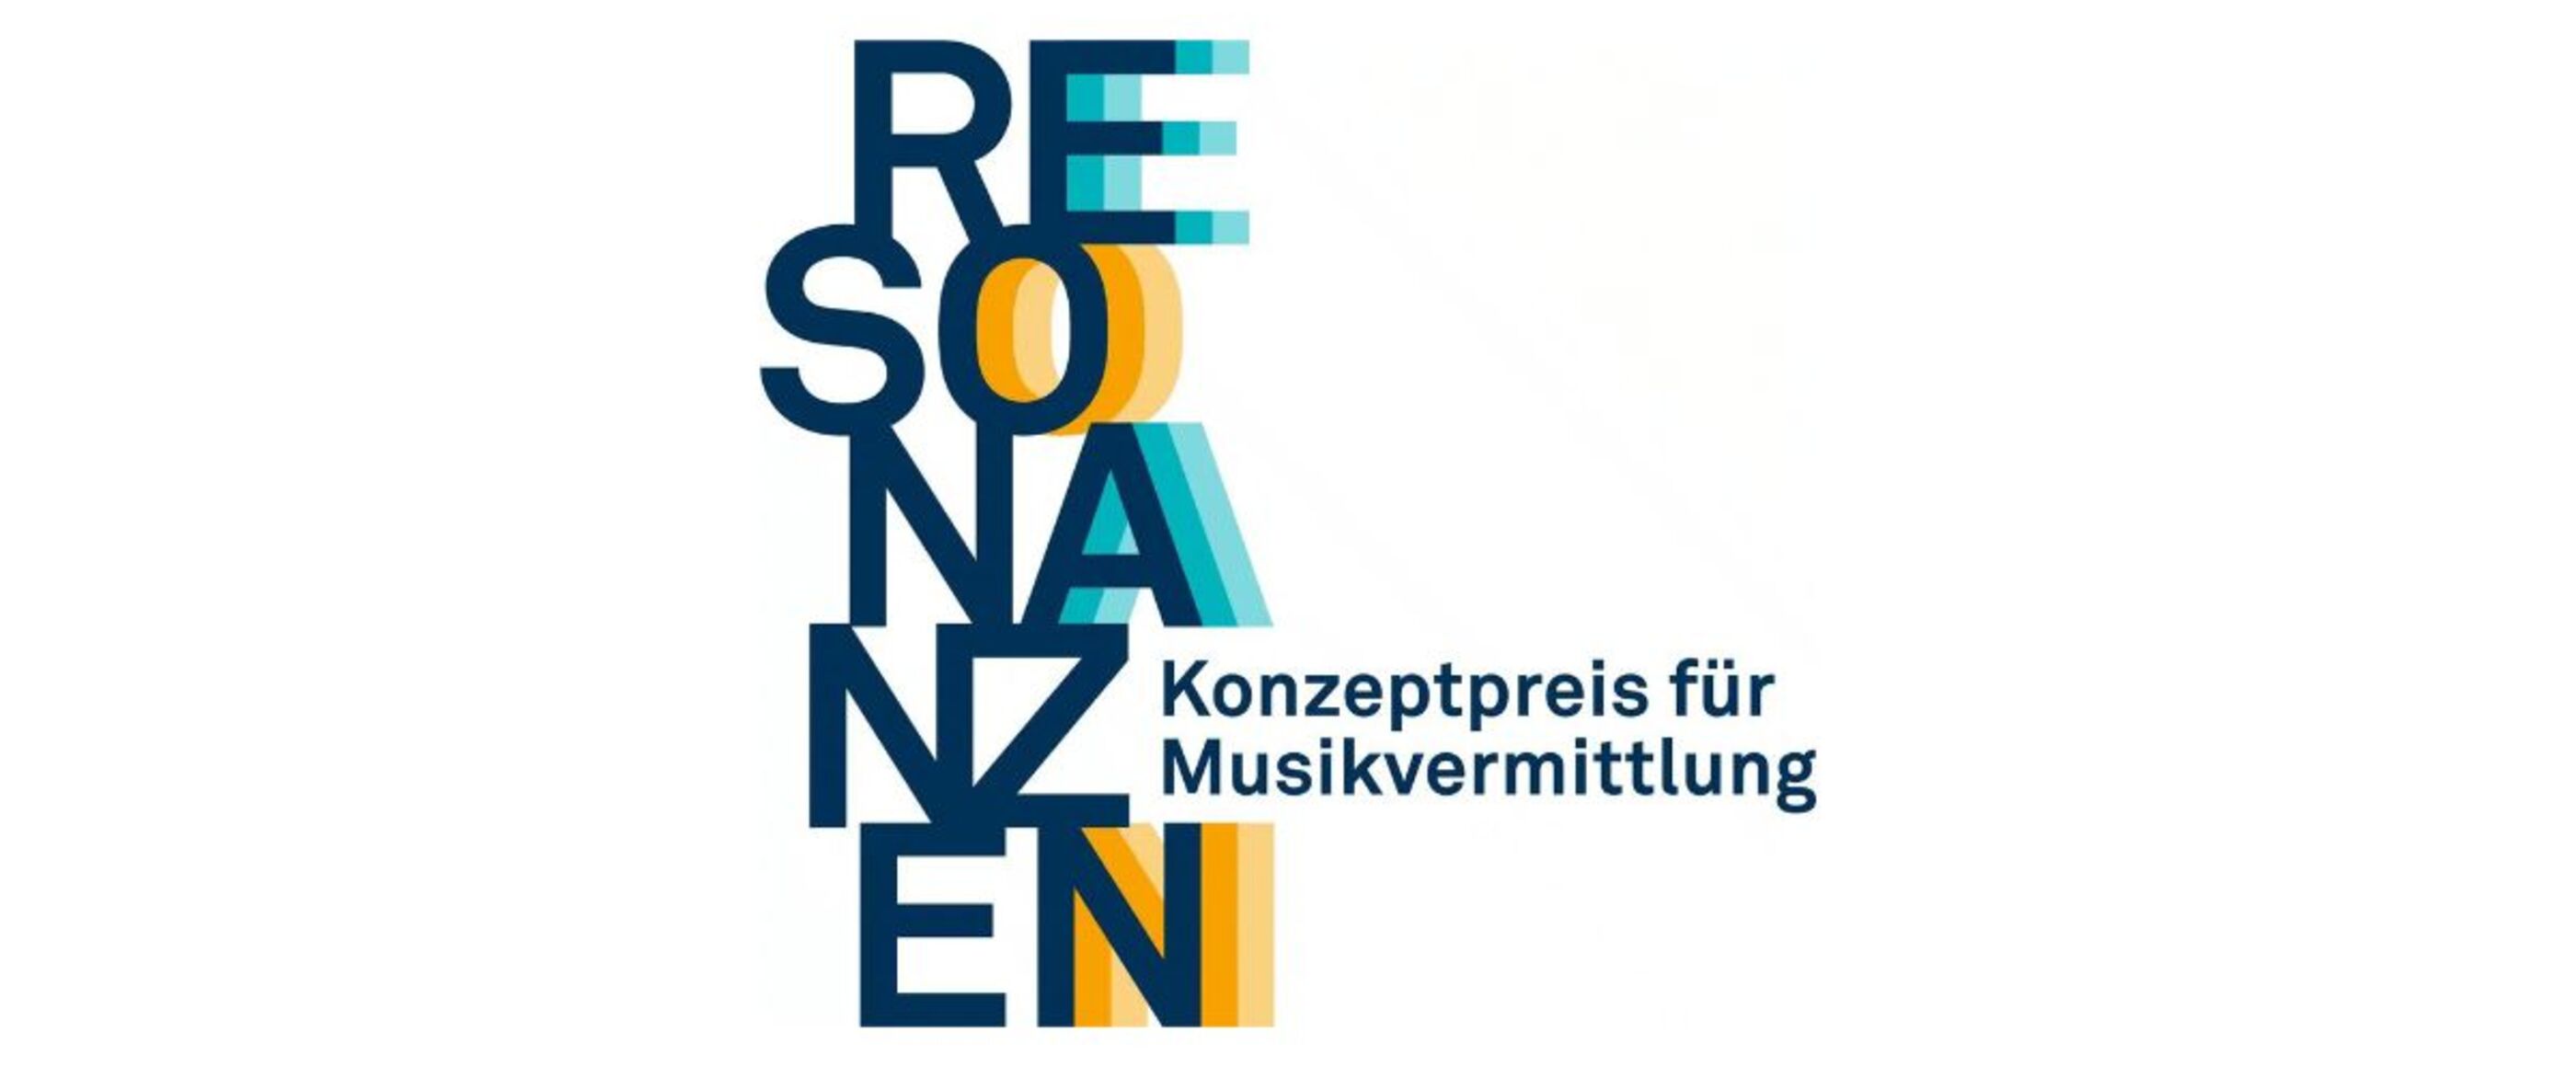 Das Wort "Resonanzen" ist vertical mit jeweils zwei Buchstaben nebeneinander geschrieben, die rechts stehenden haben jeweils gelbe oder blaue Schlieren. Neben dem Z steht "Konzeptpreis für Musikvermittlung"